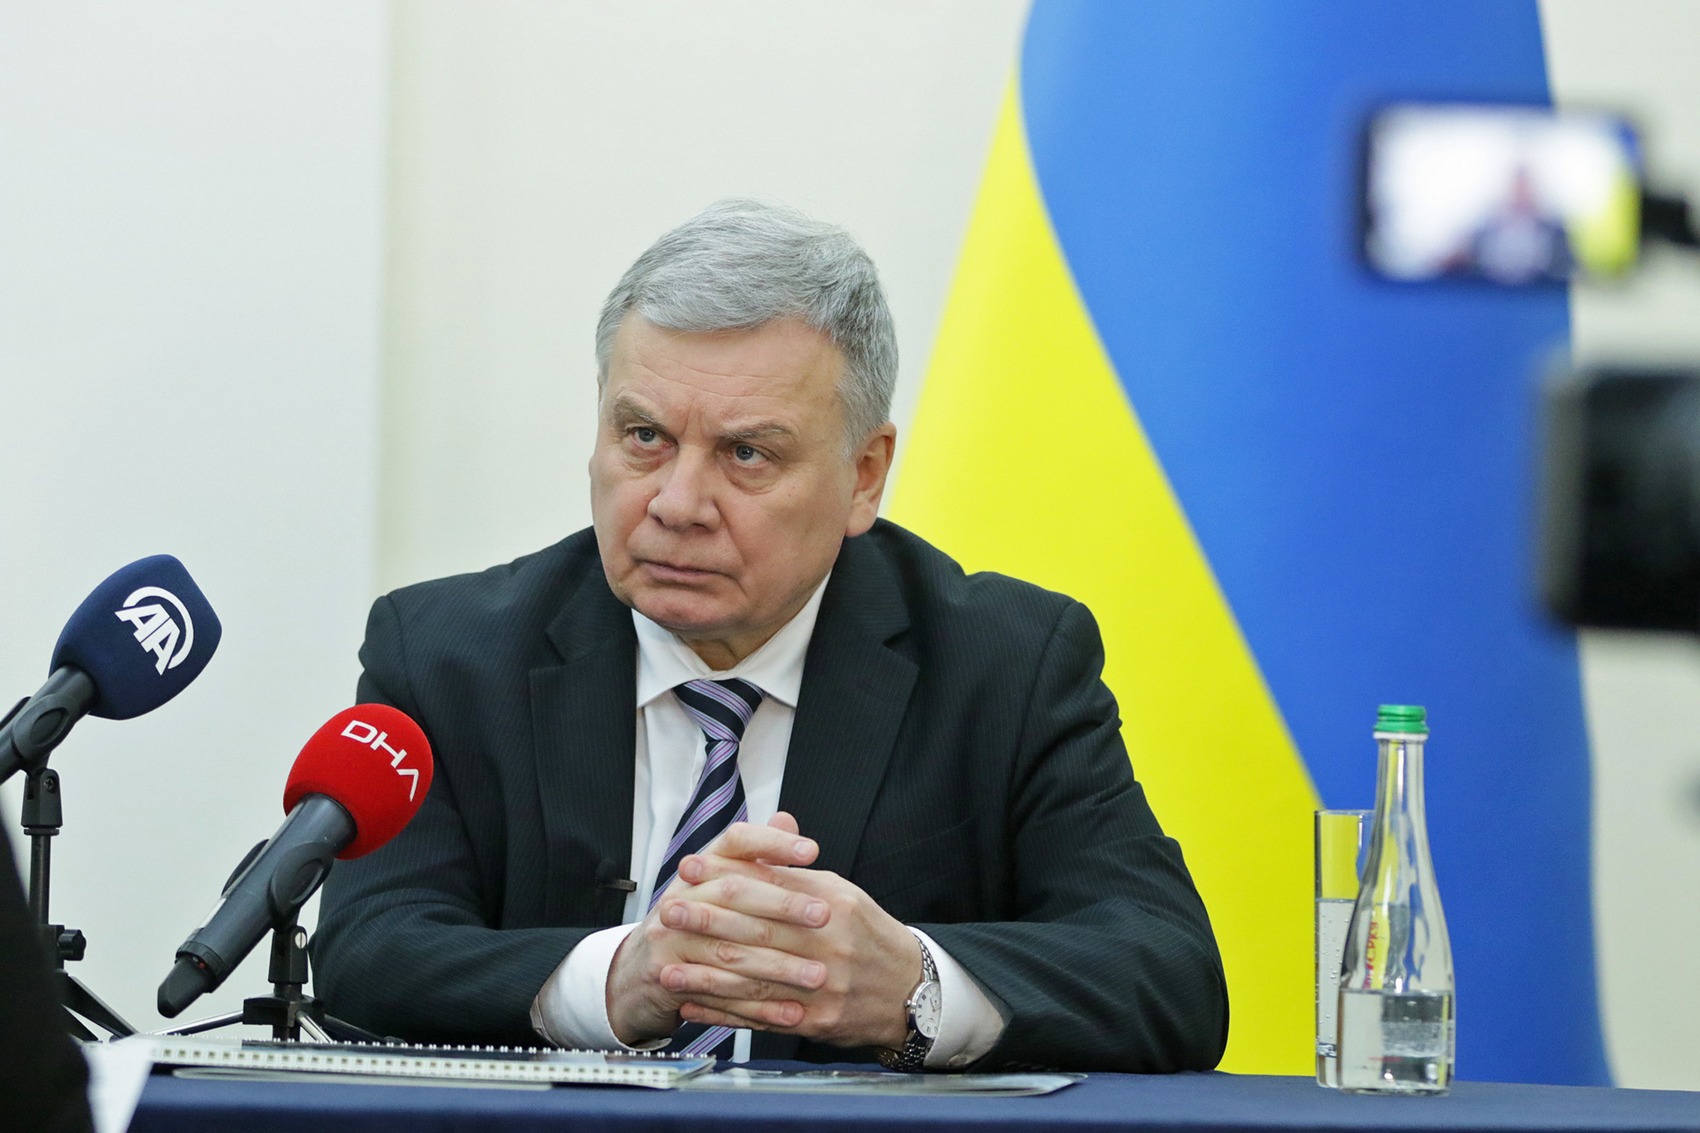 Министр обороны Украины подал в отставку